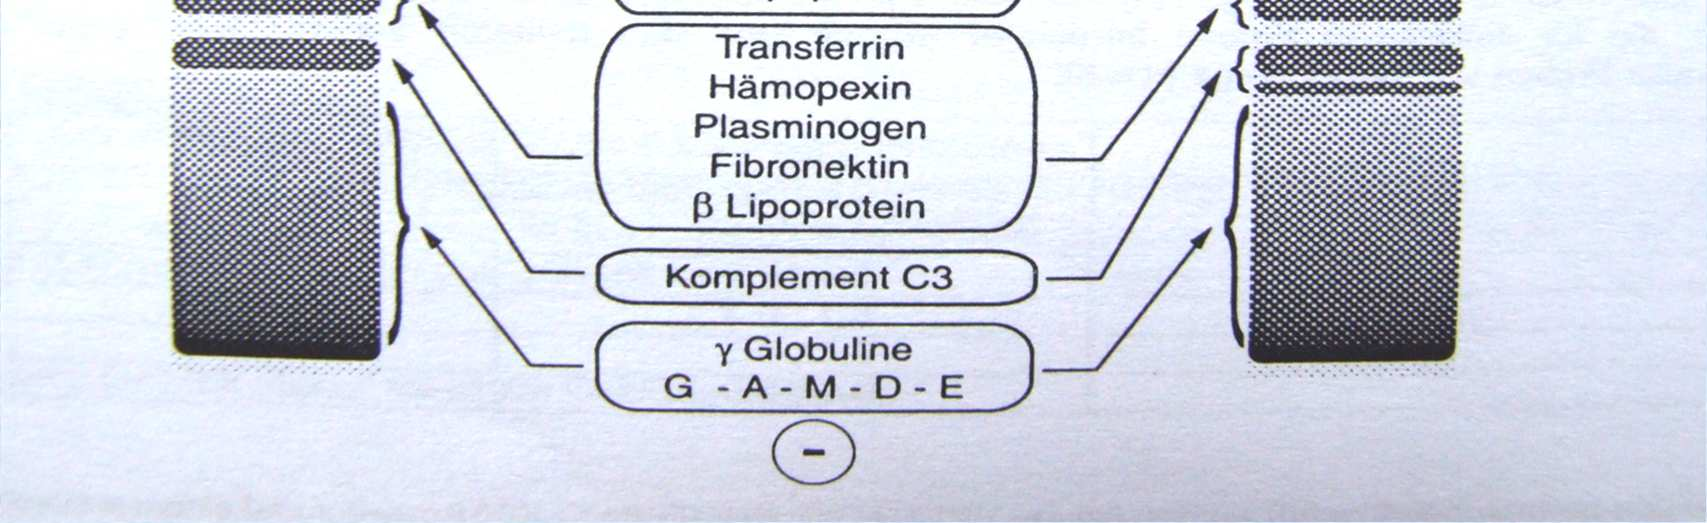 Schéma rozdelenia sérových bielkovín v agarózovom géle Alb Alb α 1 α 1 α 2 β 1 β 2 γ α 2 β 1 β 2 γ